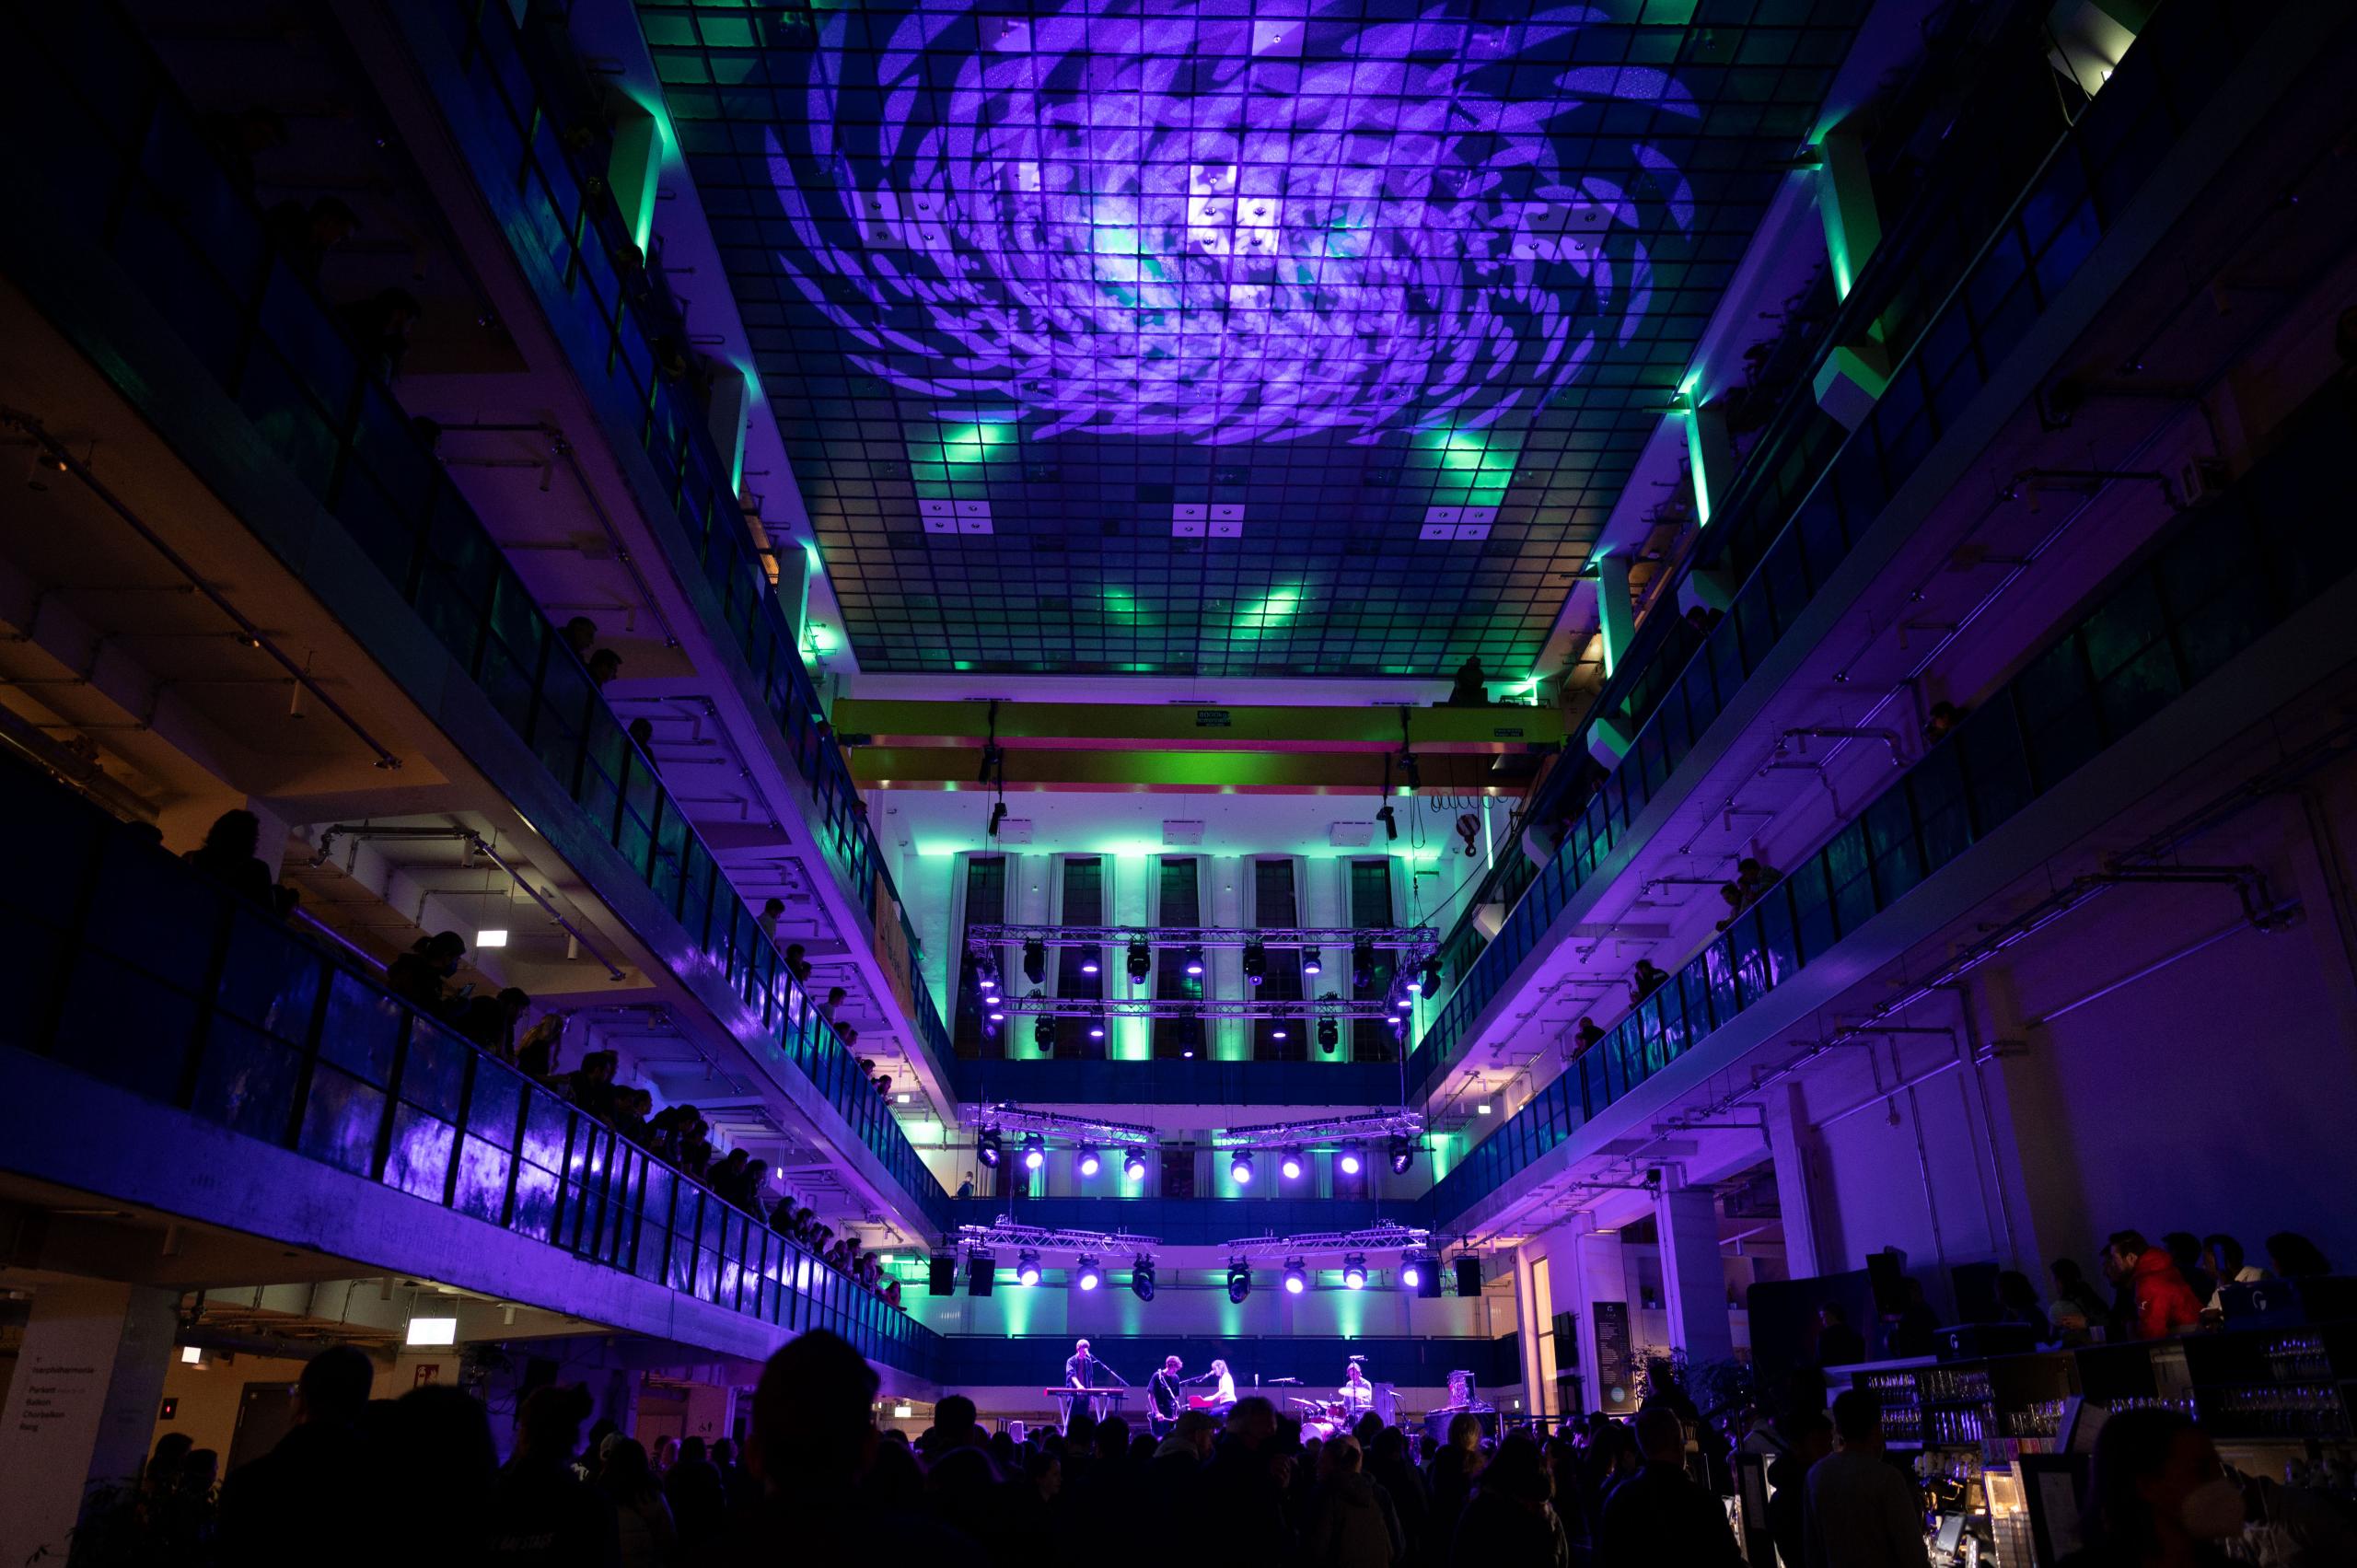 Die Halle E mit stimmungsvoller Party-Beleuchtung in lila-grün beim Isarflux Festival